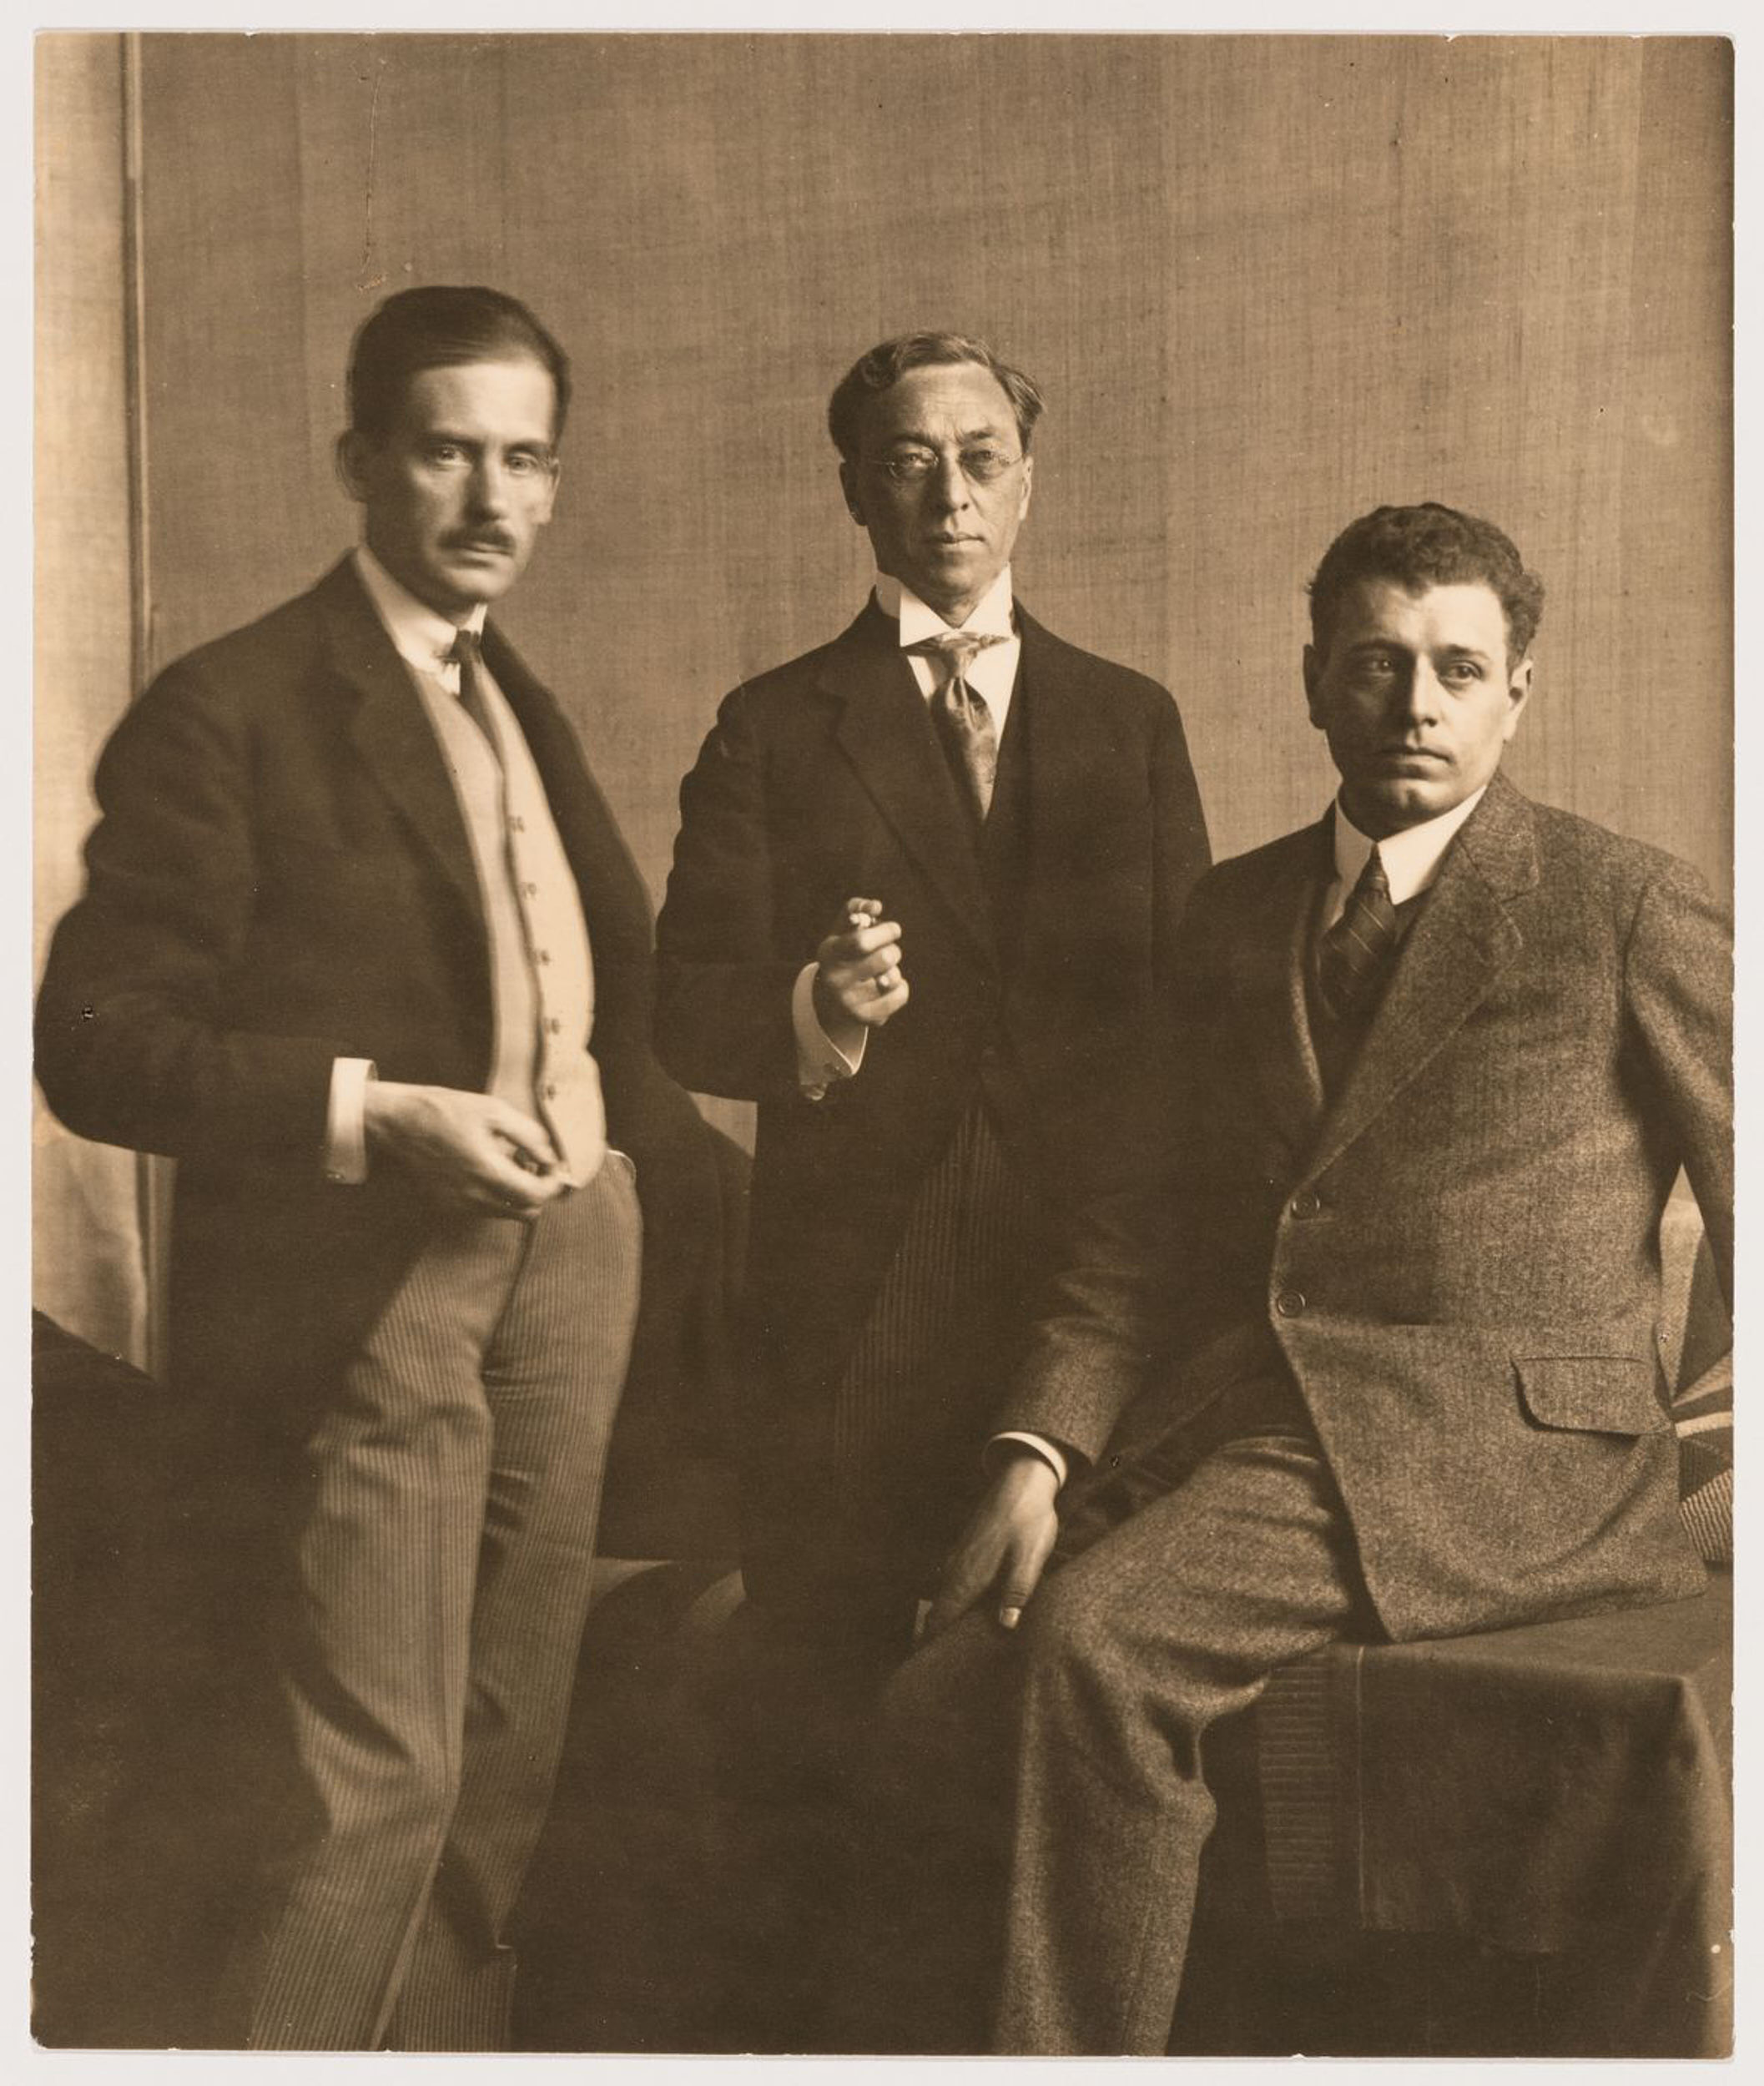 Рис. 3. Слева направо: Вальтер Гропиус, Василий Кандинский, Якобус Йоханнес Питер Ауд       во время выставки Баухауса в Веймаре, 1923 год      